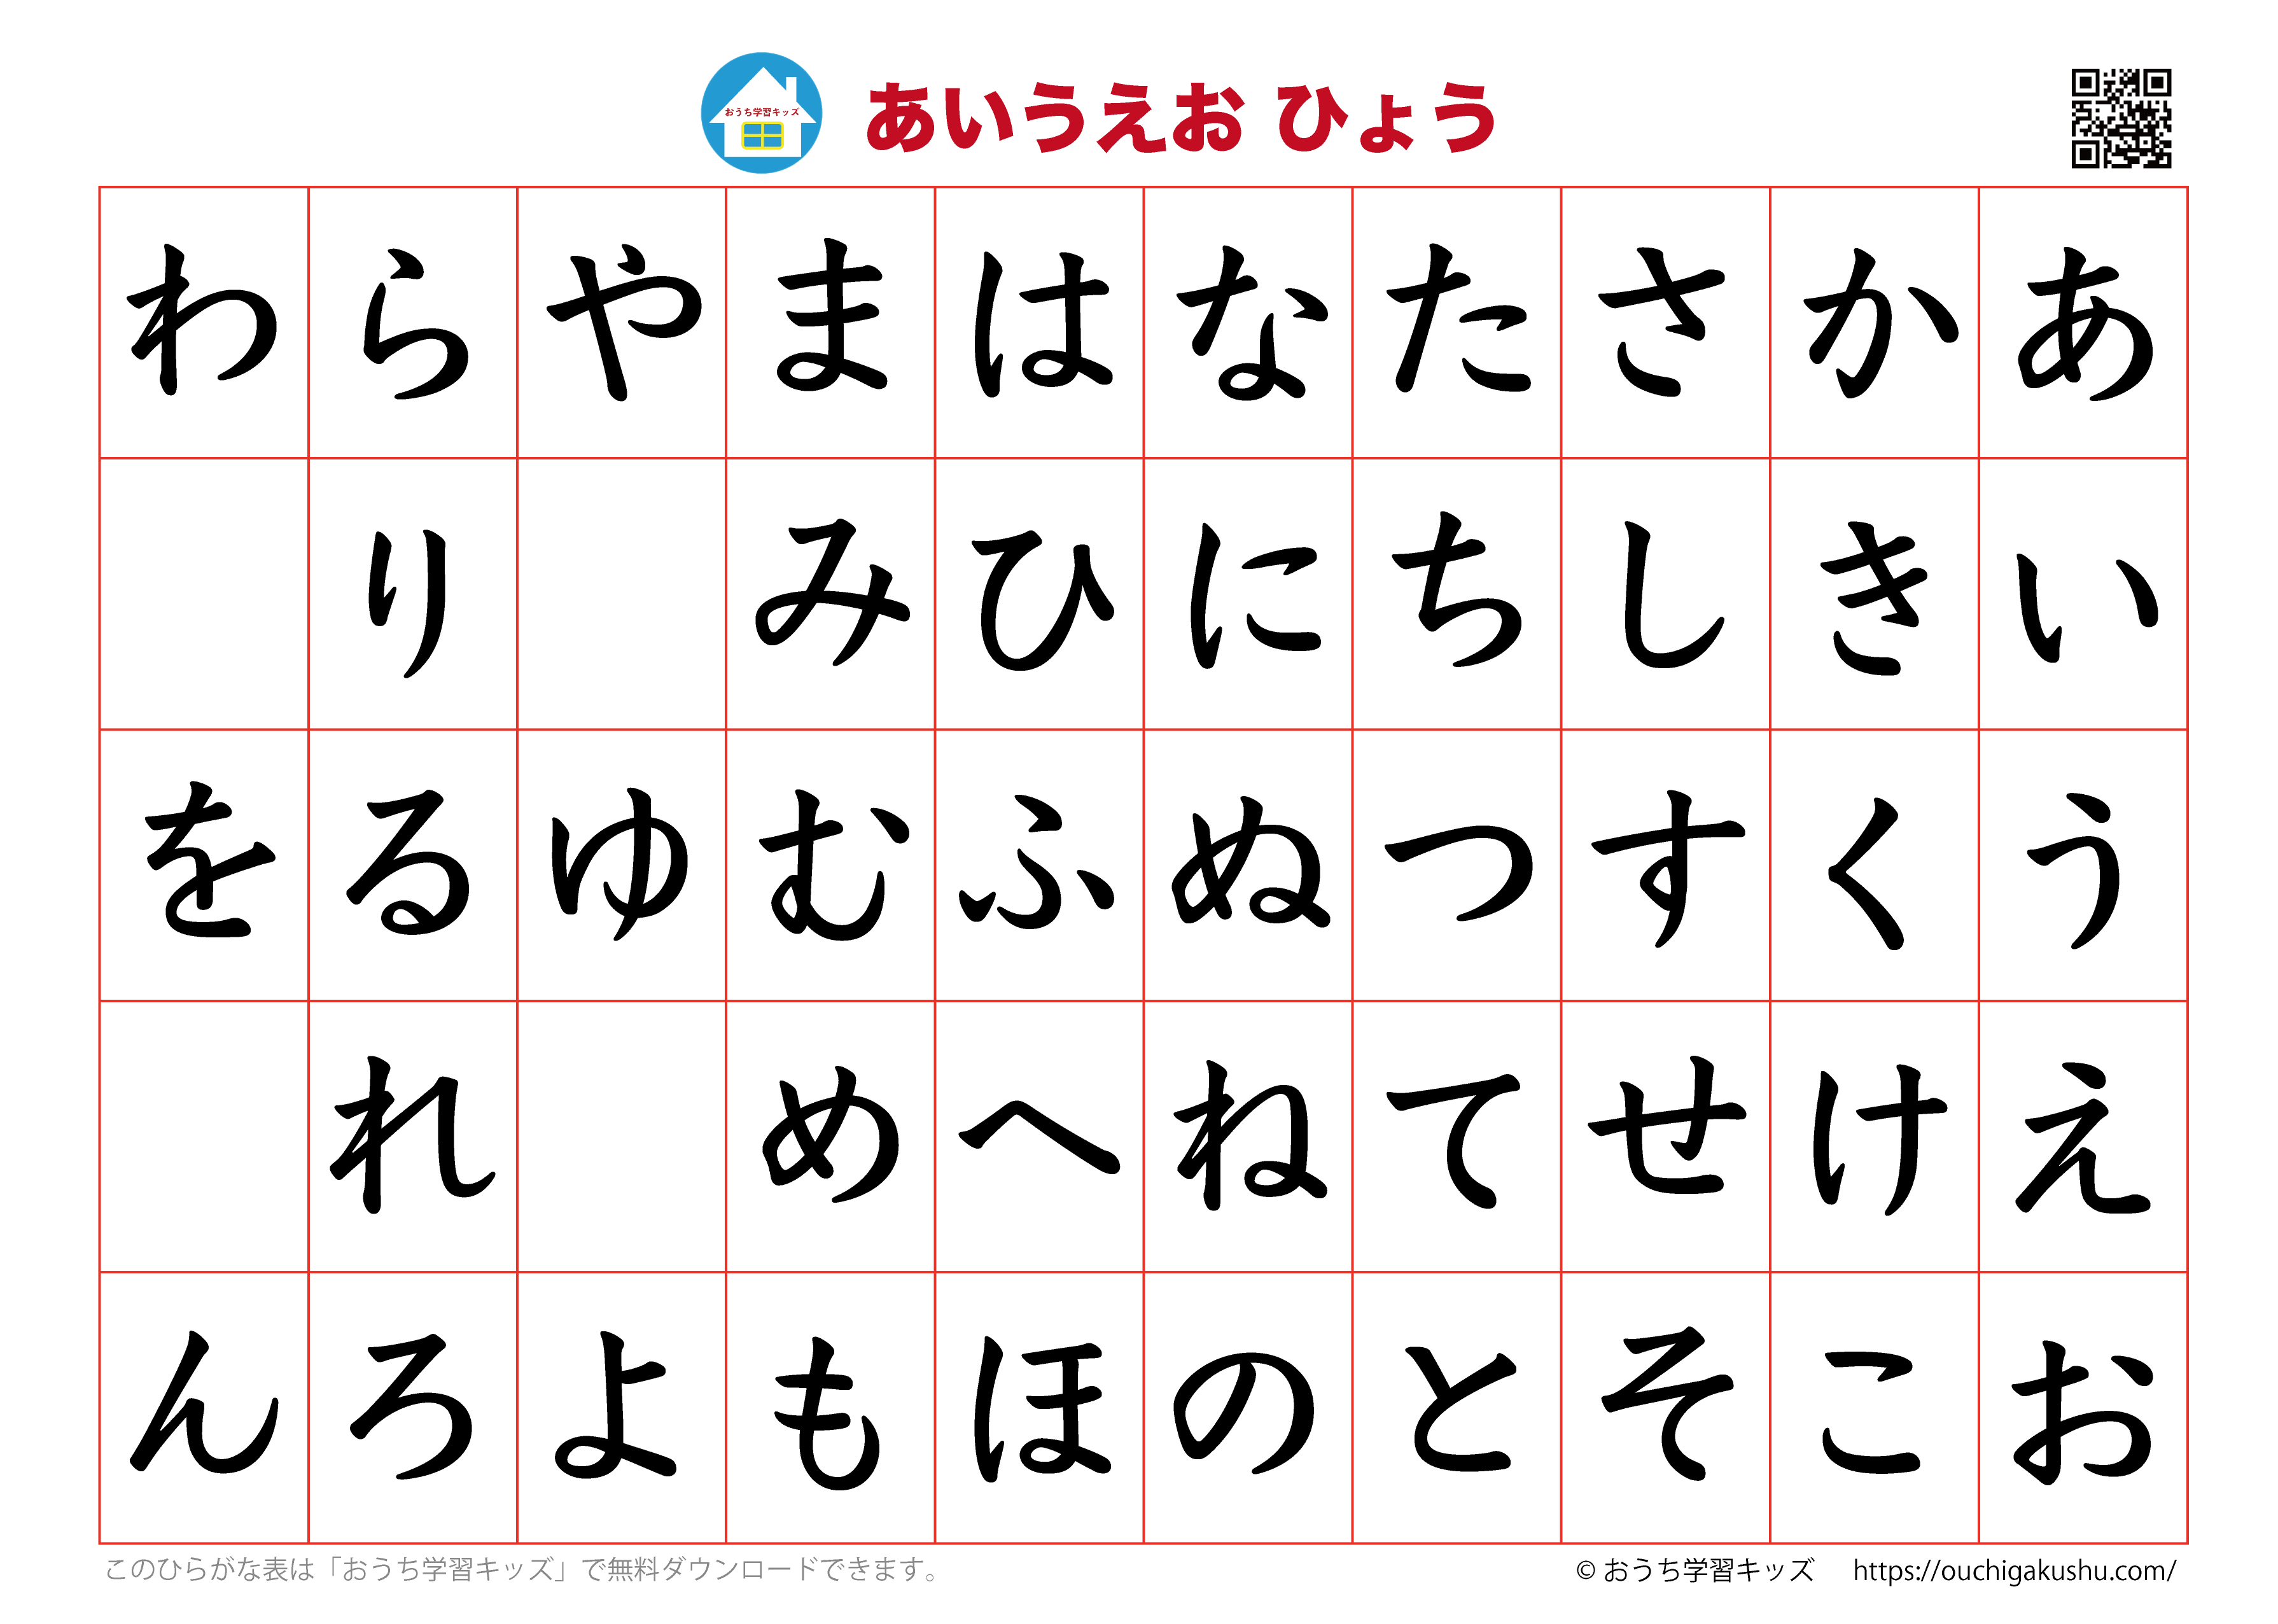  Tiếng Nhật thuộc hệ chữ tượng hình 